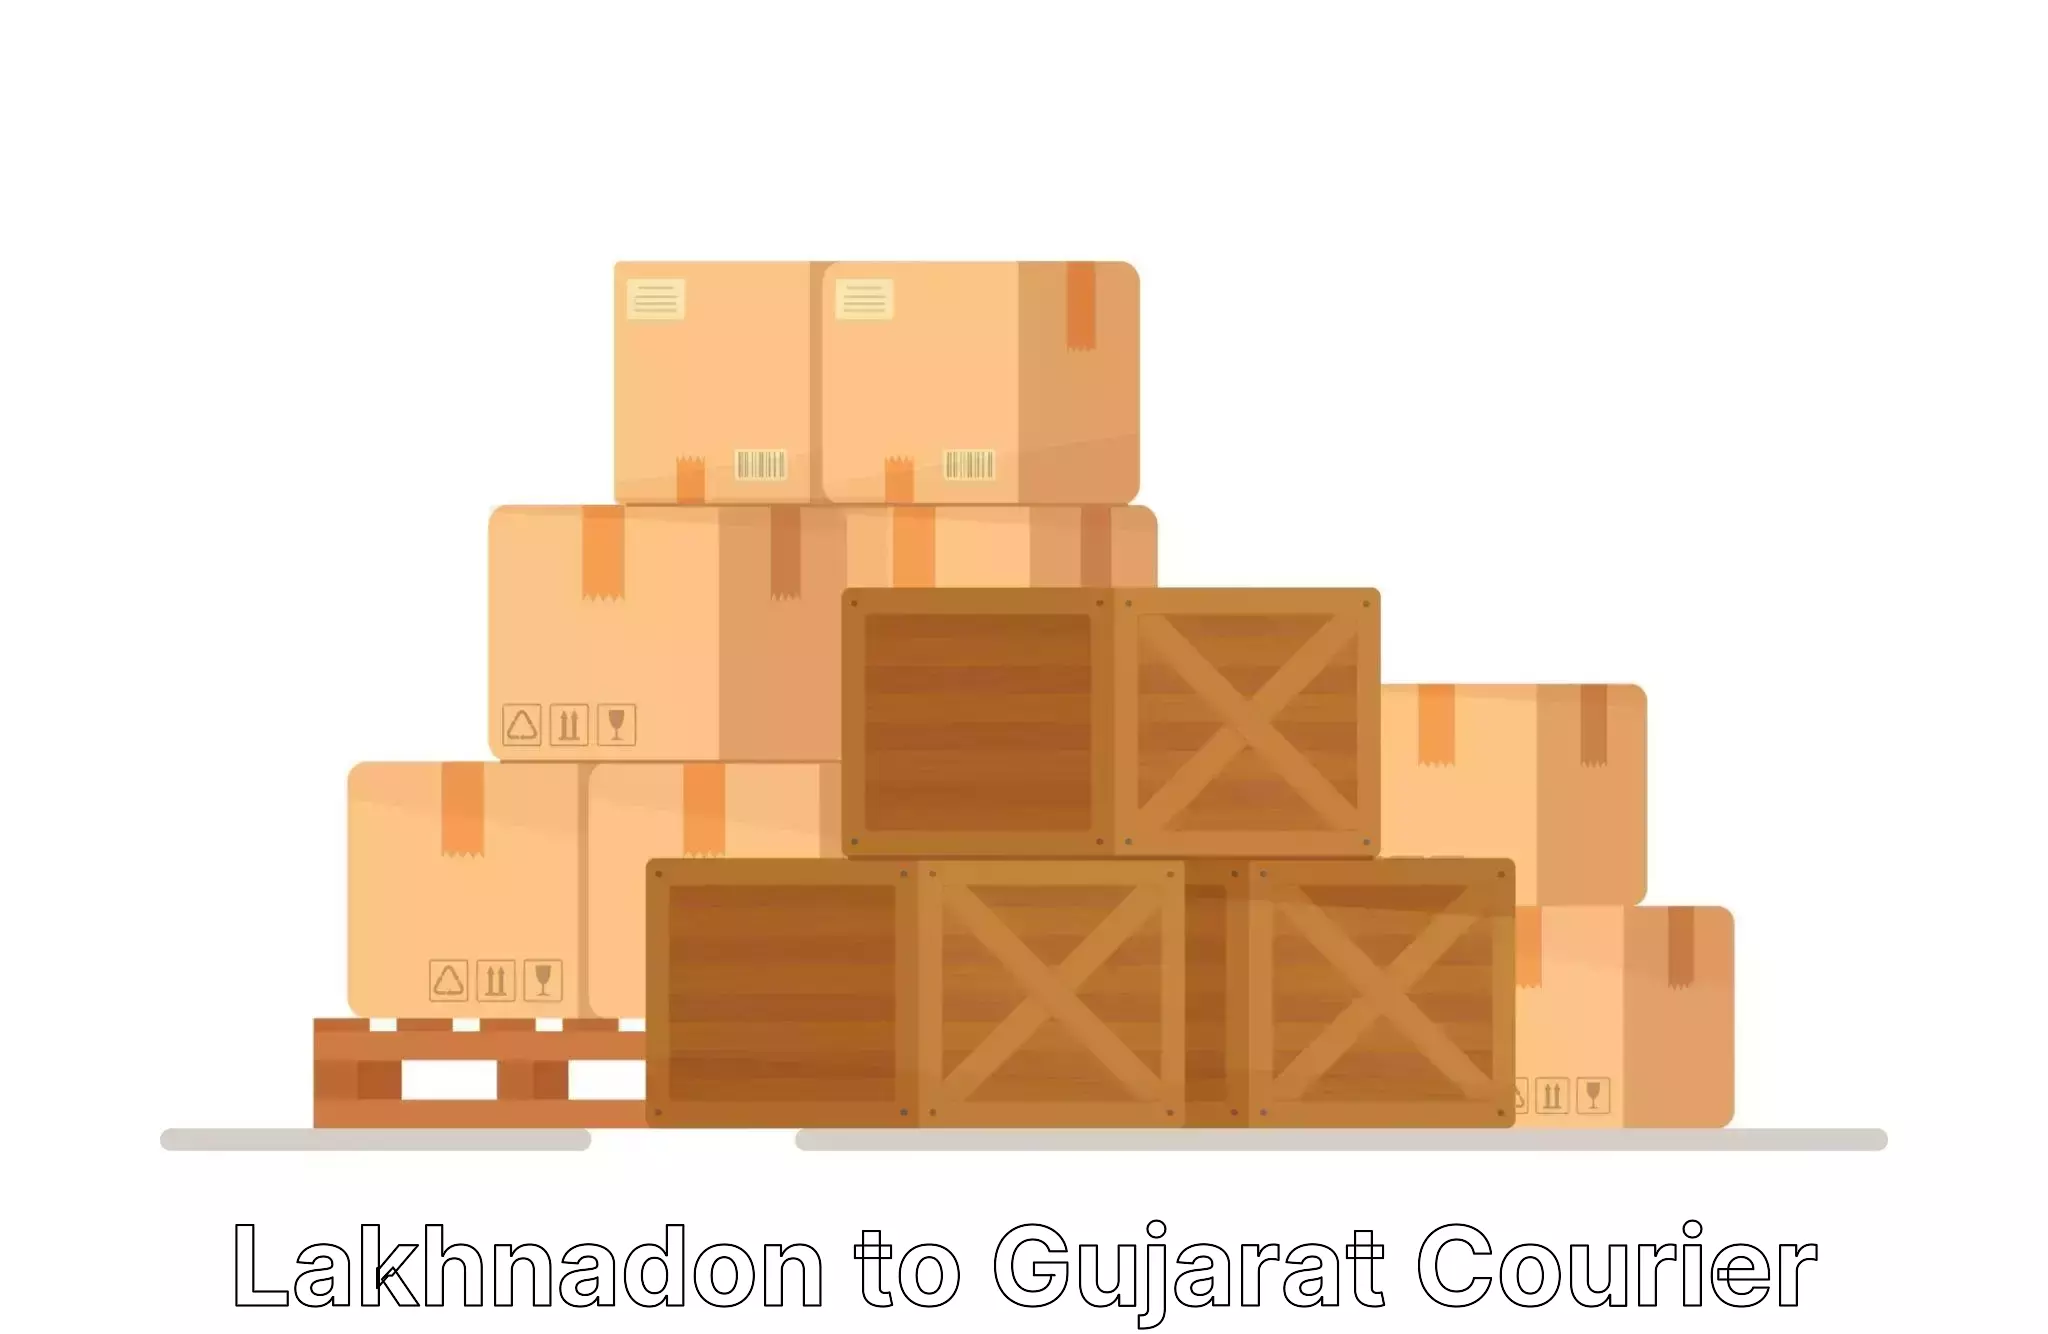 Efficient relocation services Lakhnadon to Gujarat